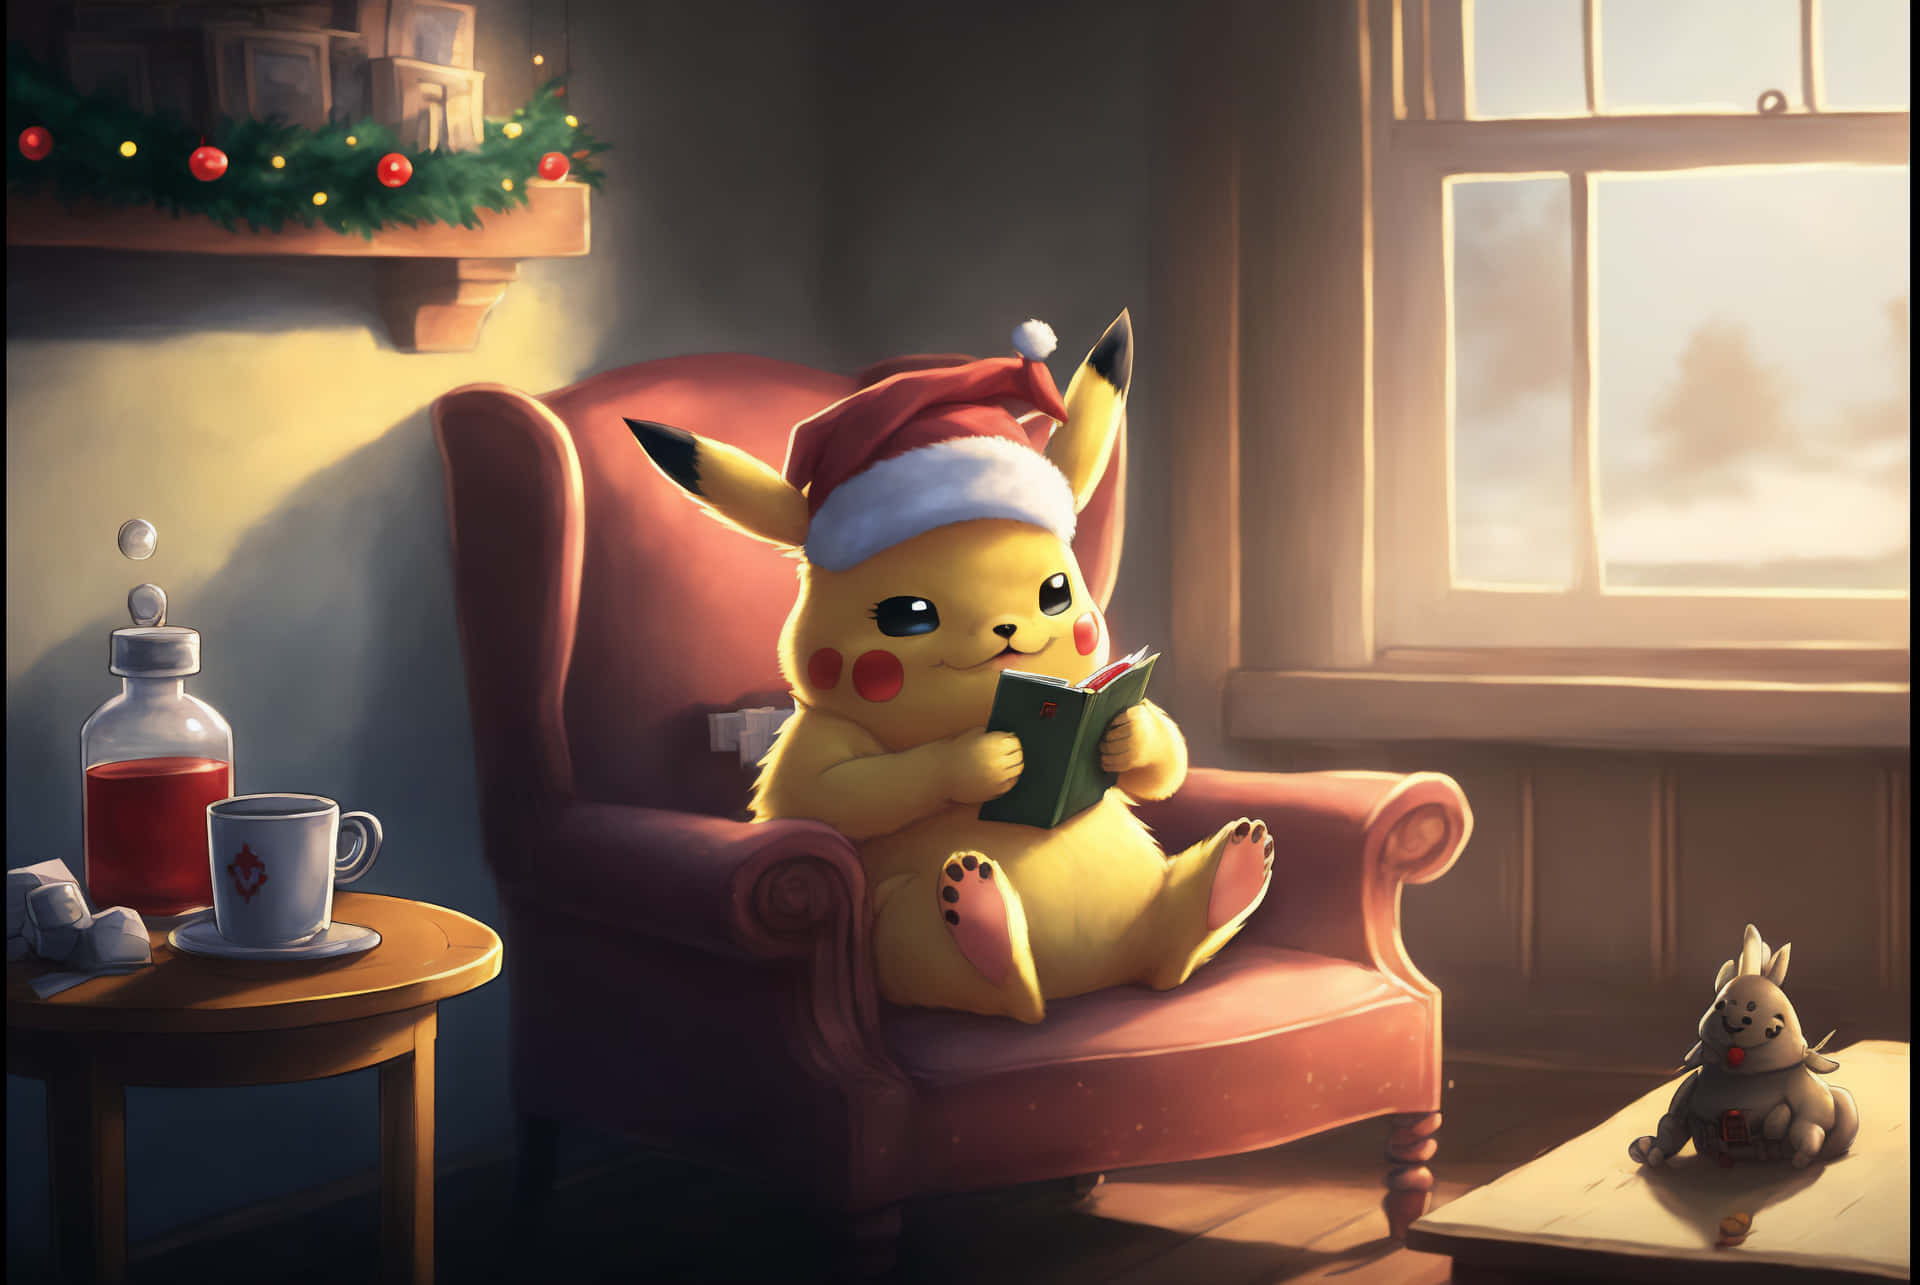 Pokémonweihnachts-pikachu Liest Ein Buch. Wallpaper